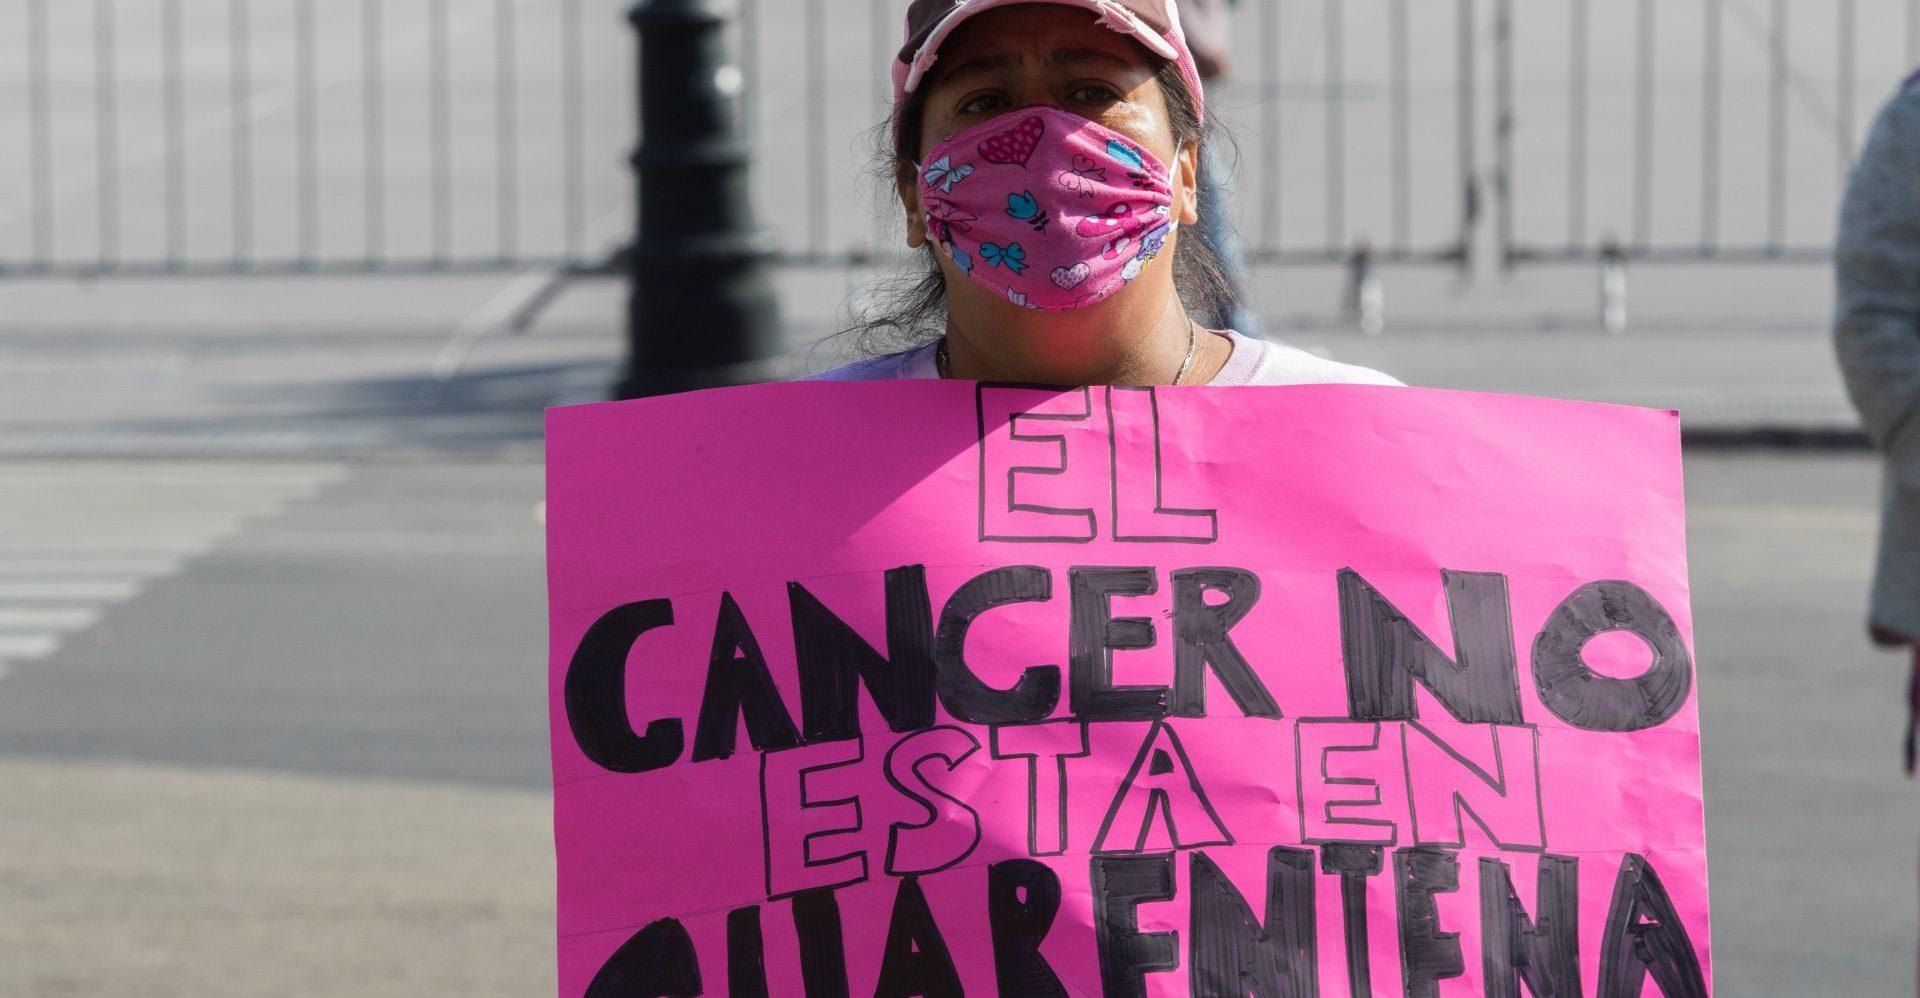 Medicamentos oncológicos hallados en Azcapotzalco coinciden con lote robado: Fiscalía de CDMX